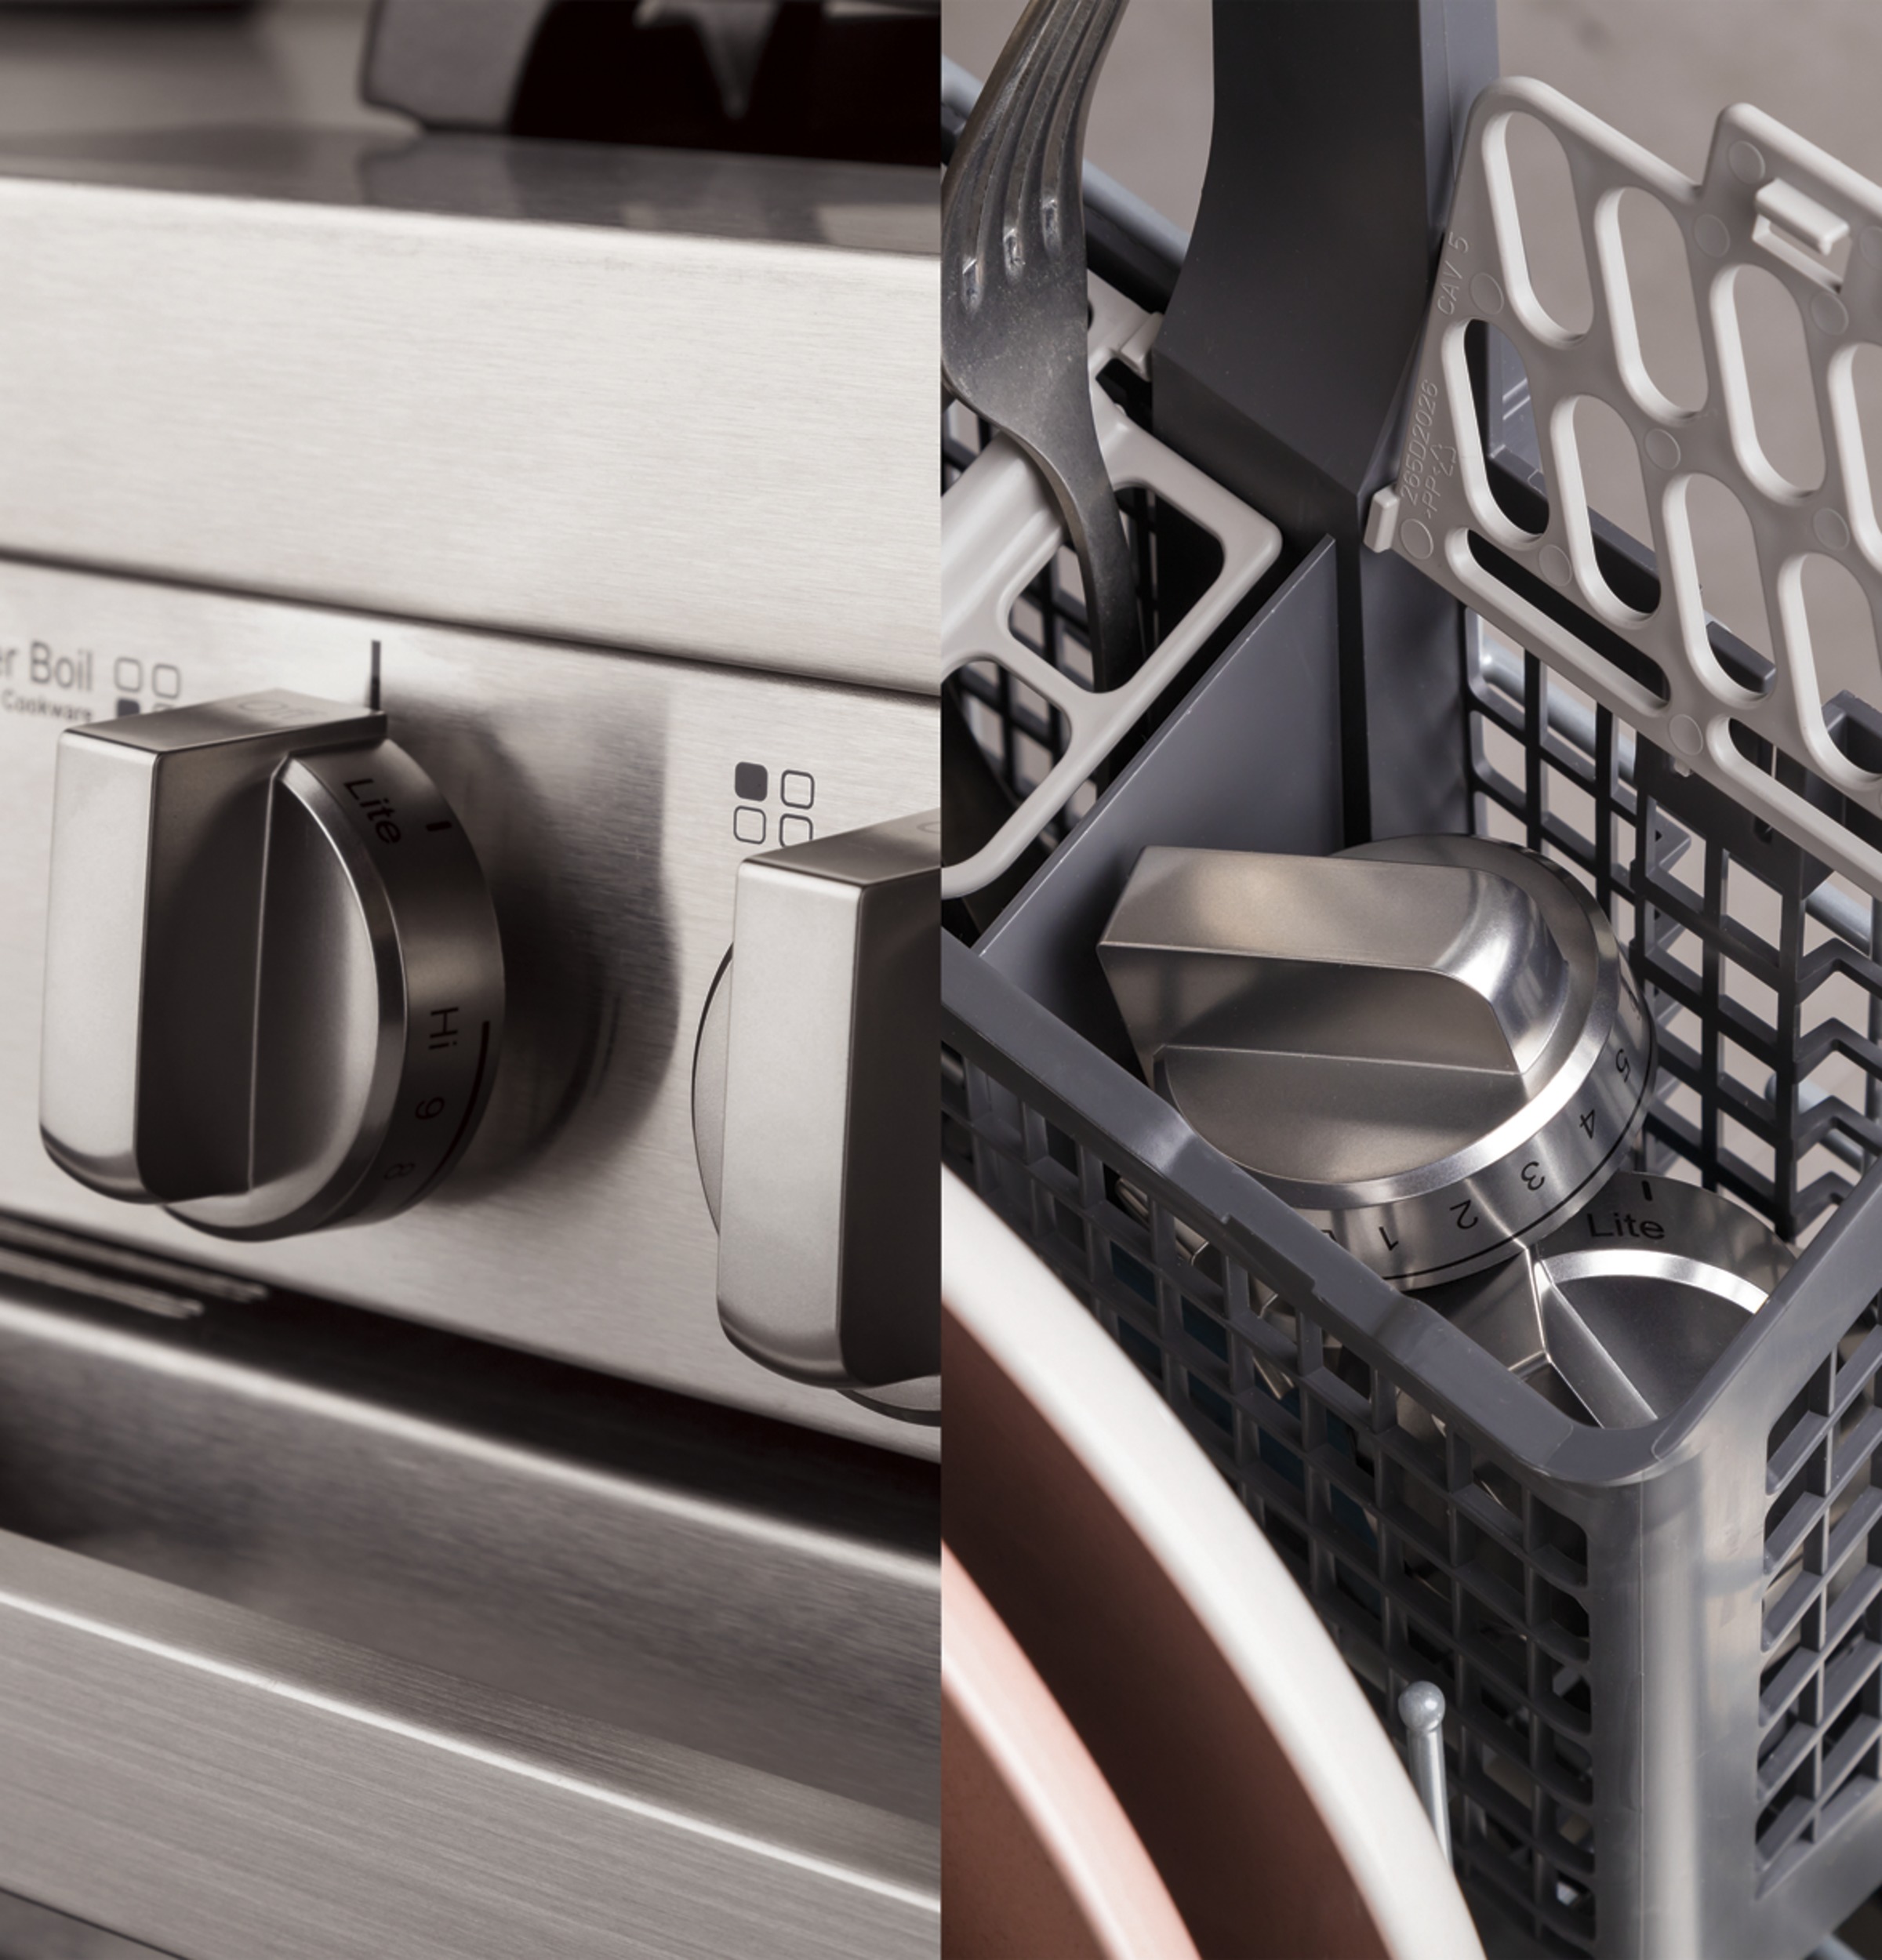 Dishwasher-safe knobs